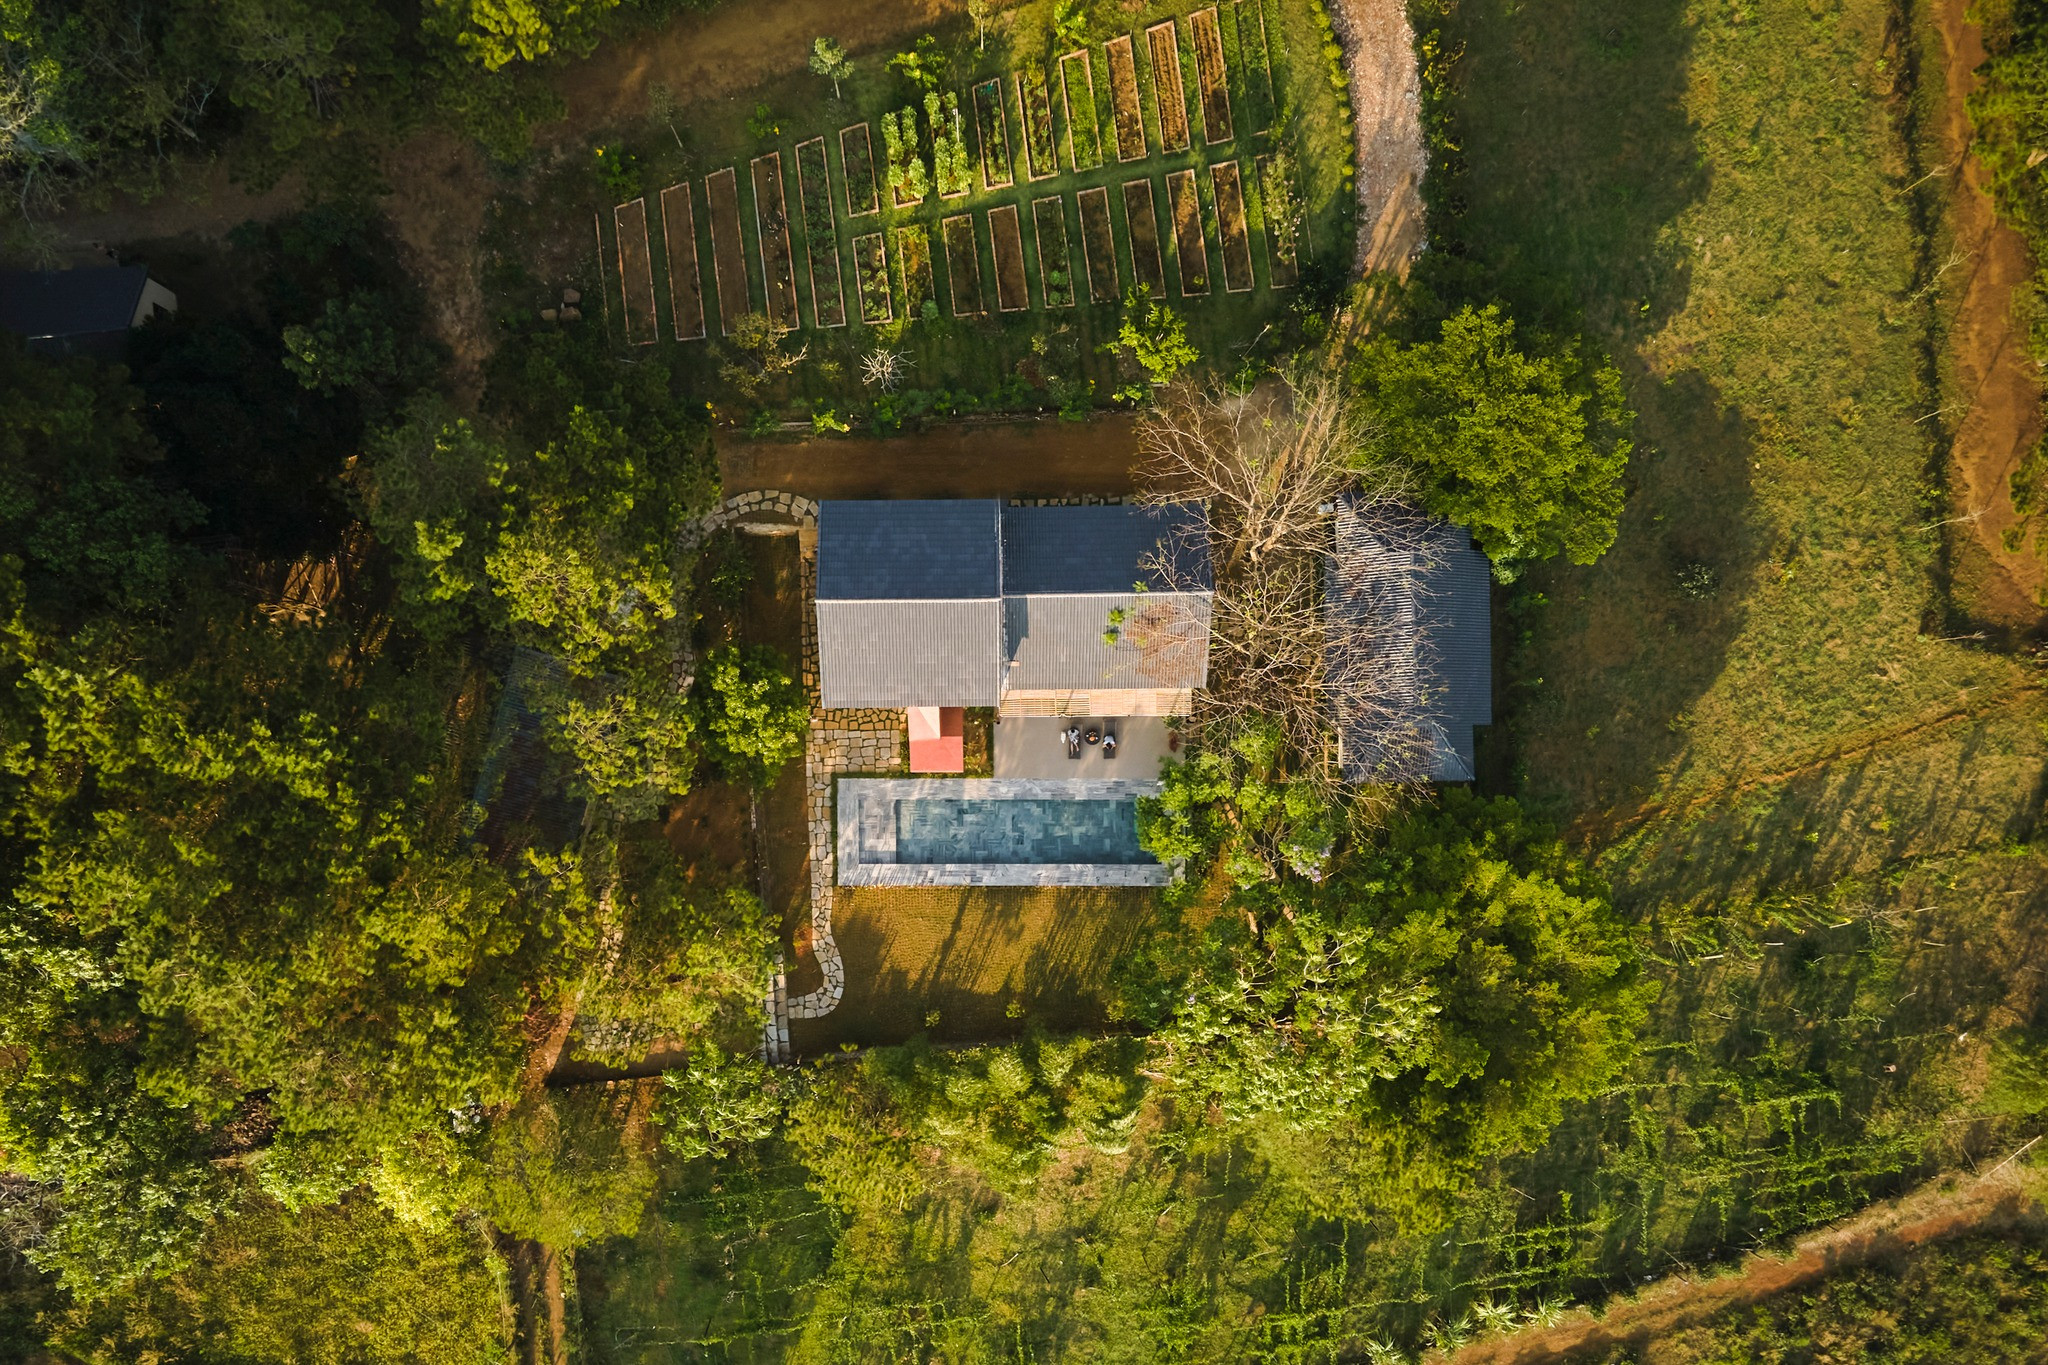 Ngôi nhà trên đỉnh đồi ở Bảo Lộc mang màu sắc vùng đất đỏ, tái sử dụng đồ cũ